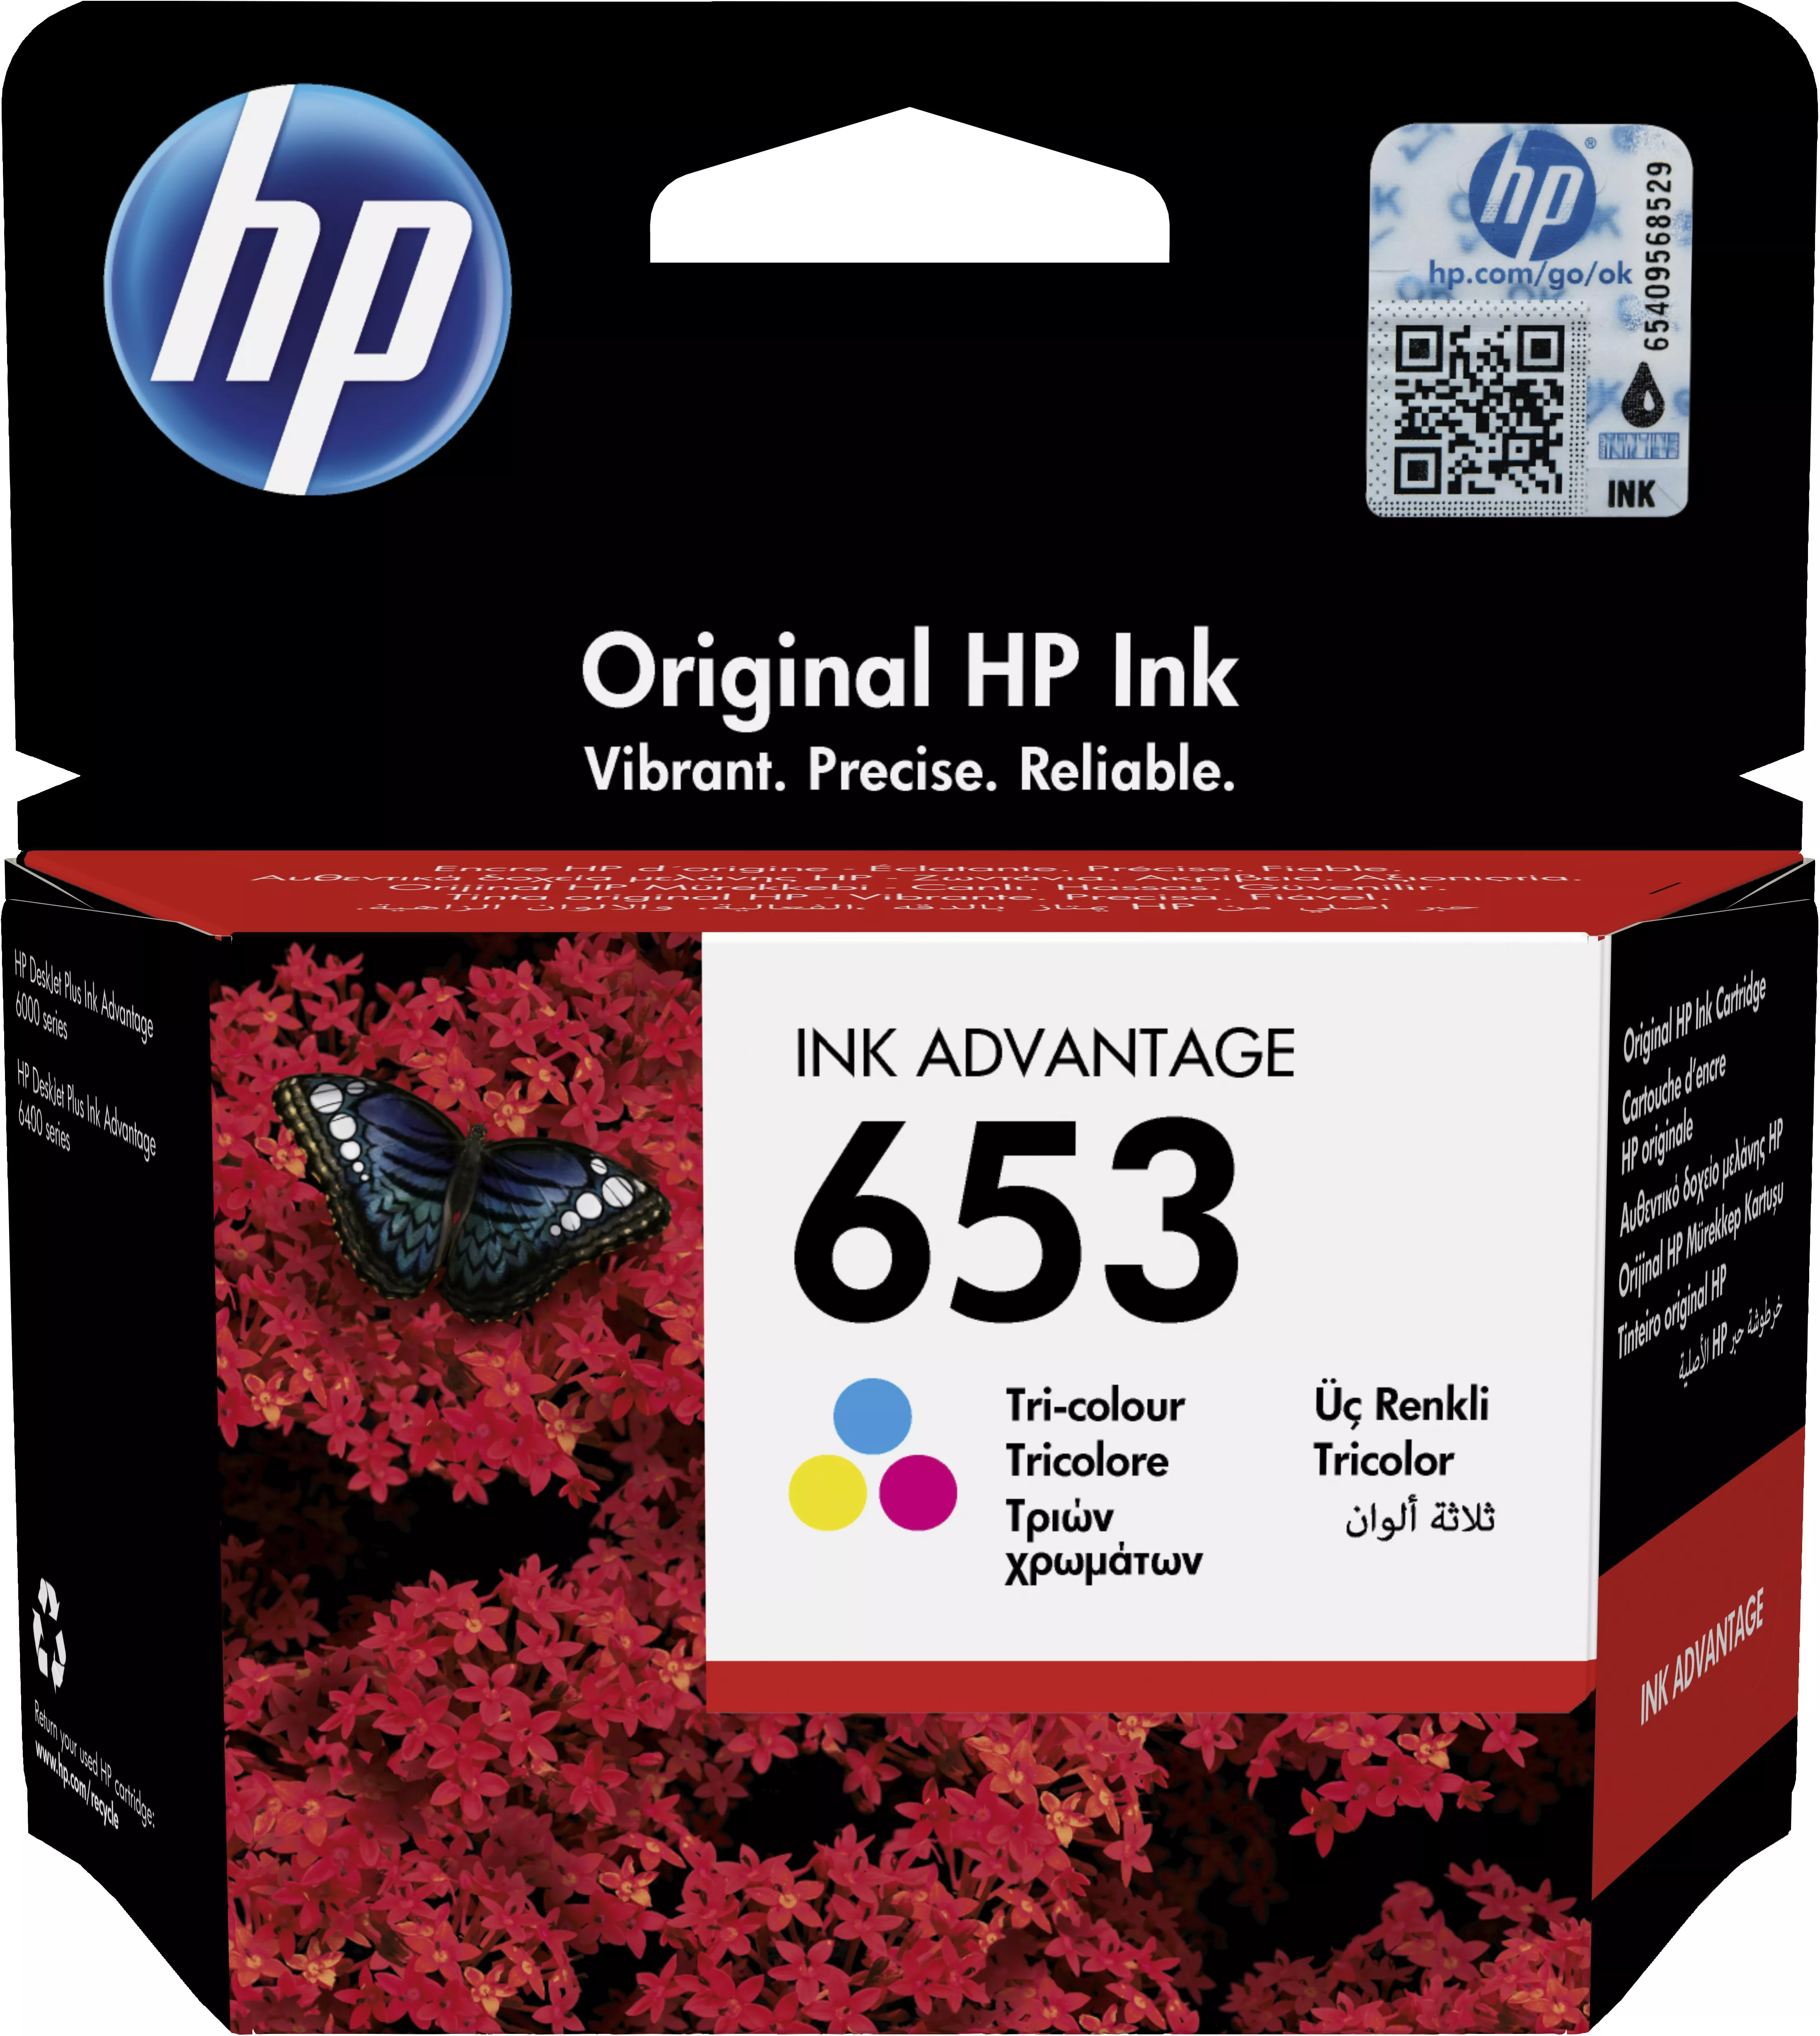 Achat HP 653 Tri-color Original Ink Advantage Cartridge et autres produits de la marque HP